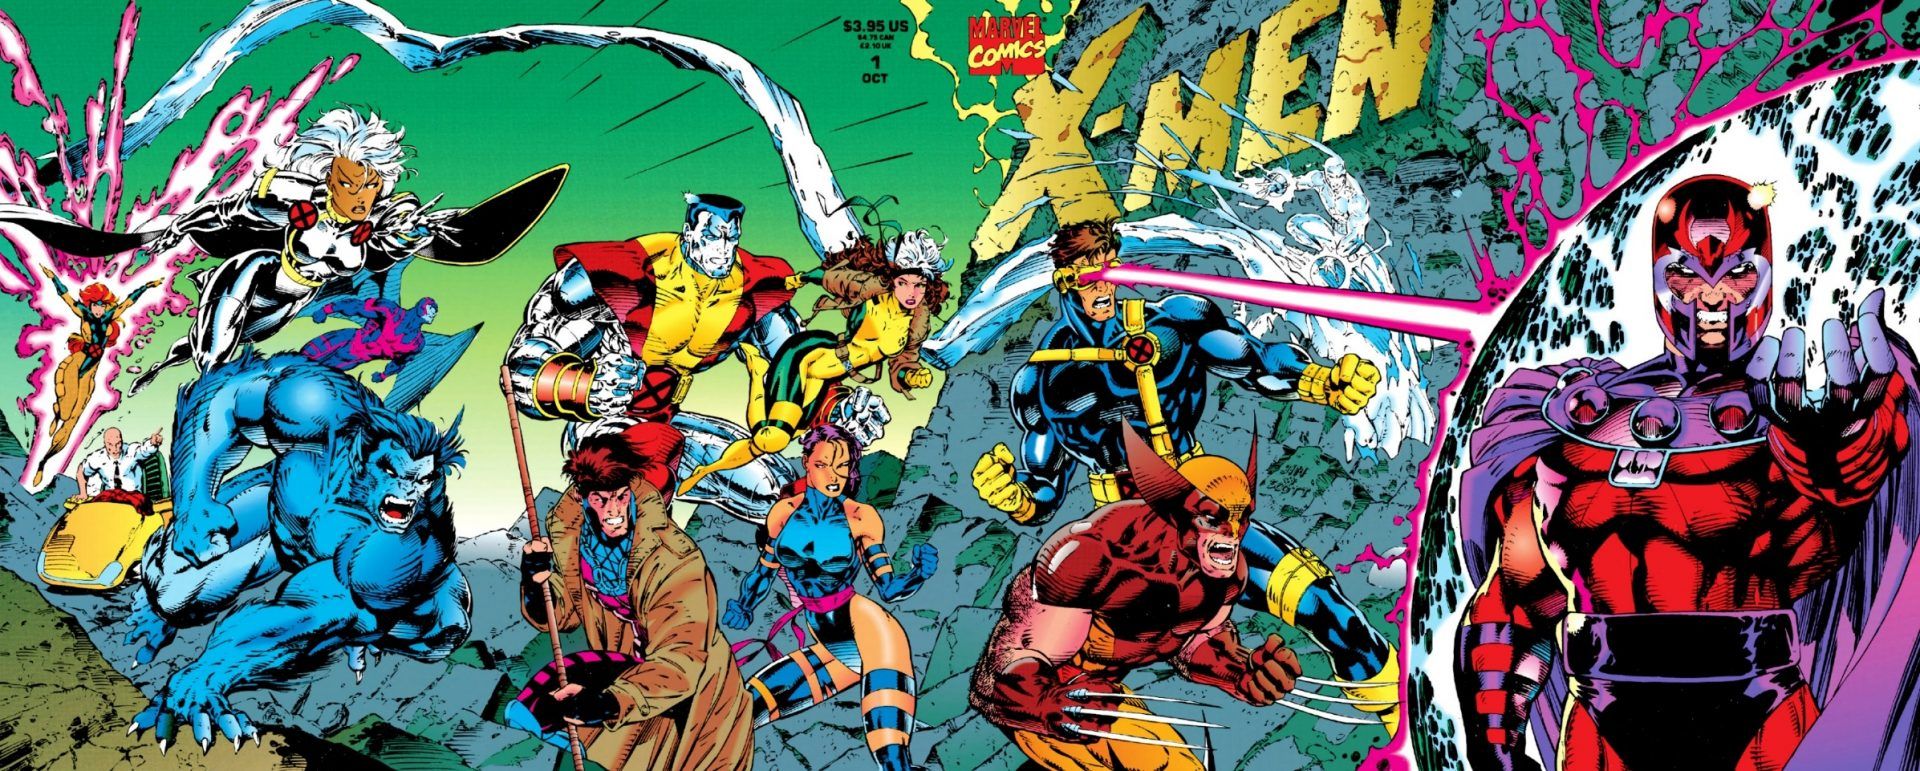 X-Men #1 gatefold cover